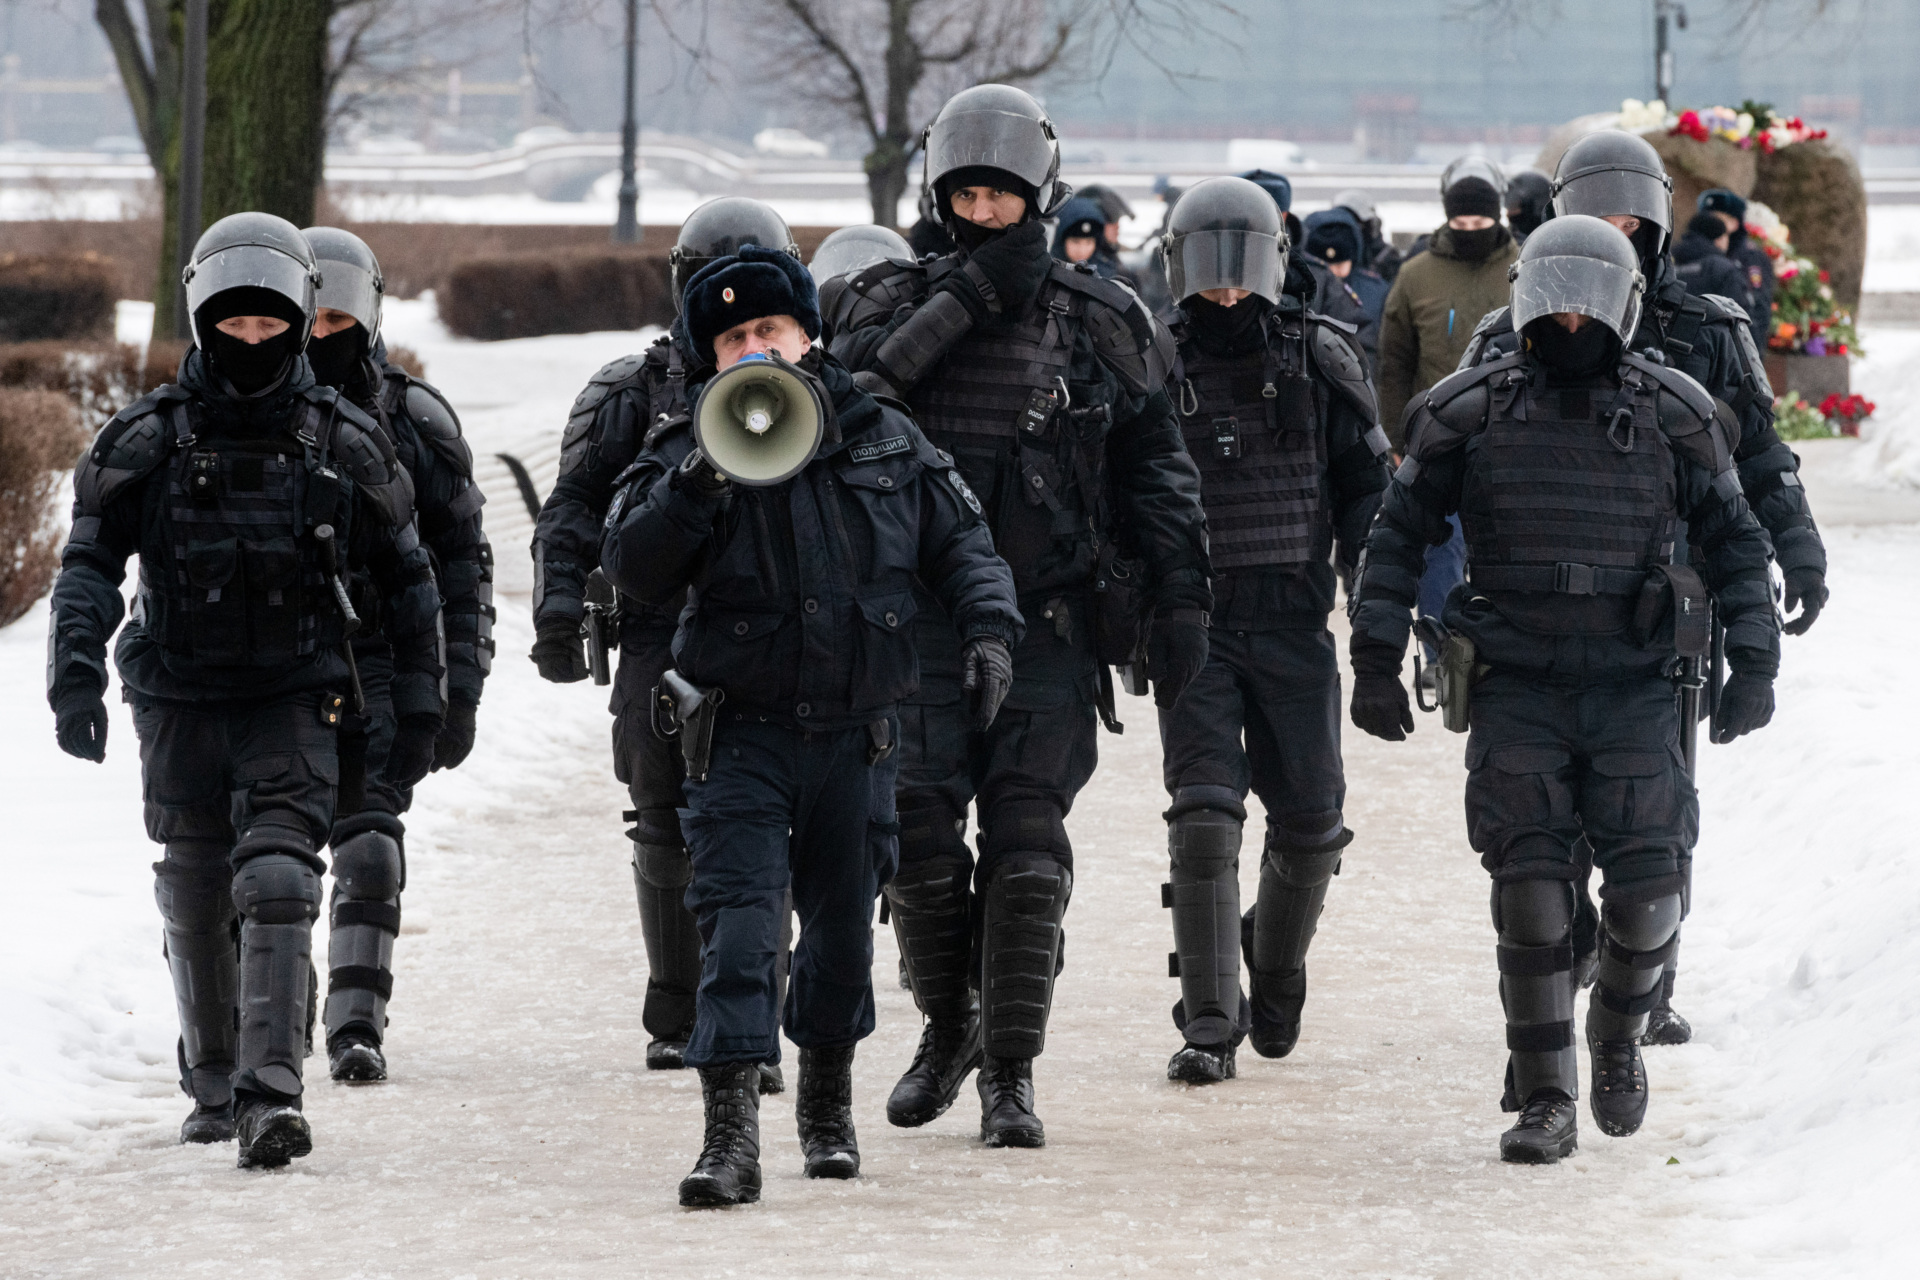 ΑΓΙΑ ΠΕΤΡΟΥΠΟΛΗ, ΡΩΣΙΑ - 17/02/2024: Η αστυνομία αποκλείει το δρόμο προς το μνημείο των θυμάτων της πολιτικής καταστολής, όπου Ρώσοι πολίτες κατευθύνονται για να τιμήσουν τη μνήμη του ηγέτη της ρωσικής αντιπολίτευσης Αλεξέι Ναβάλνι την επομένη της είδησης του θανάτου του στην Αγία Πετρούπολη. (Photo by Andrei Bok/SOPA Images/LightRocket via Getty Images)